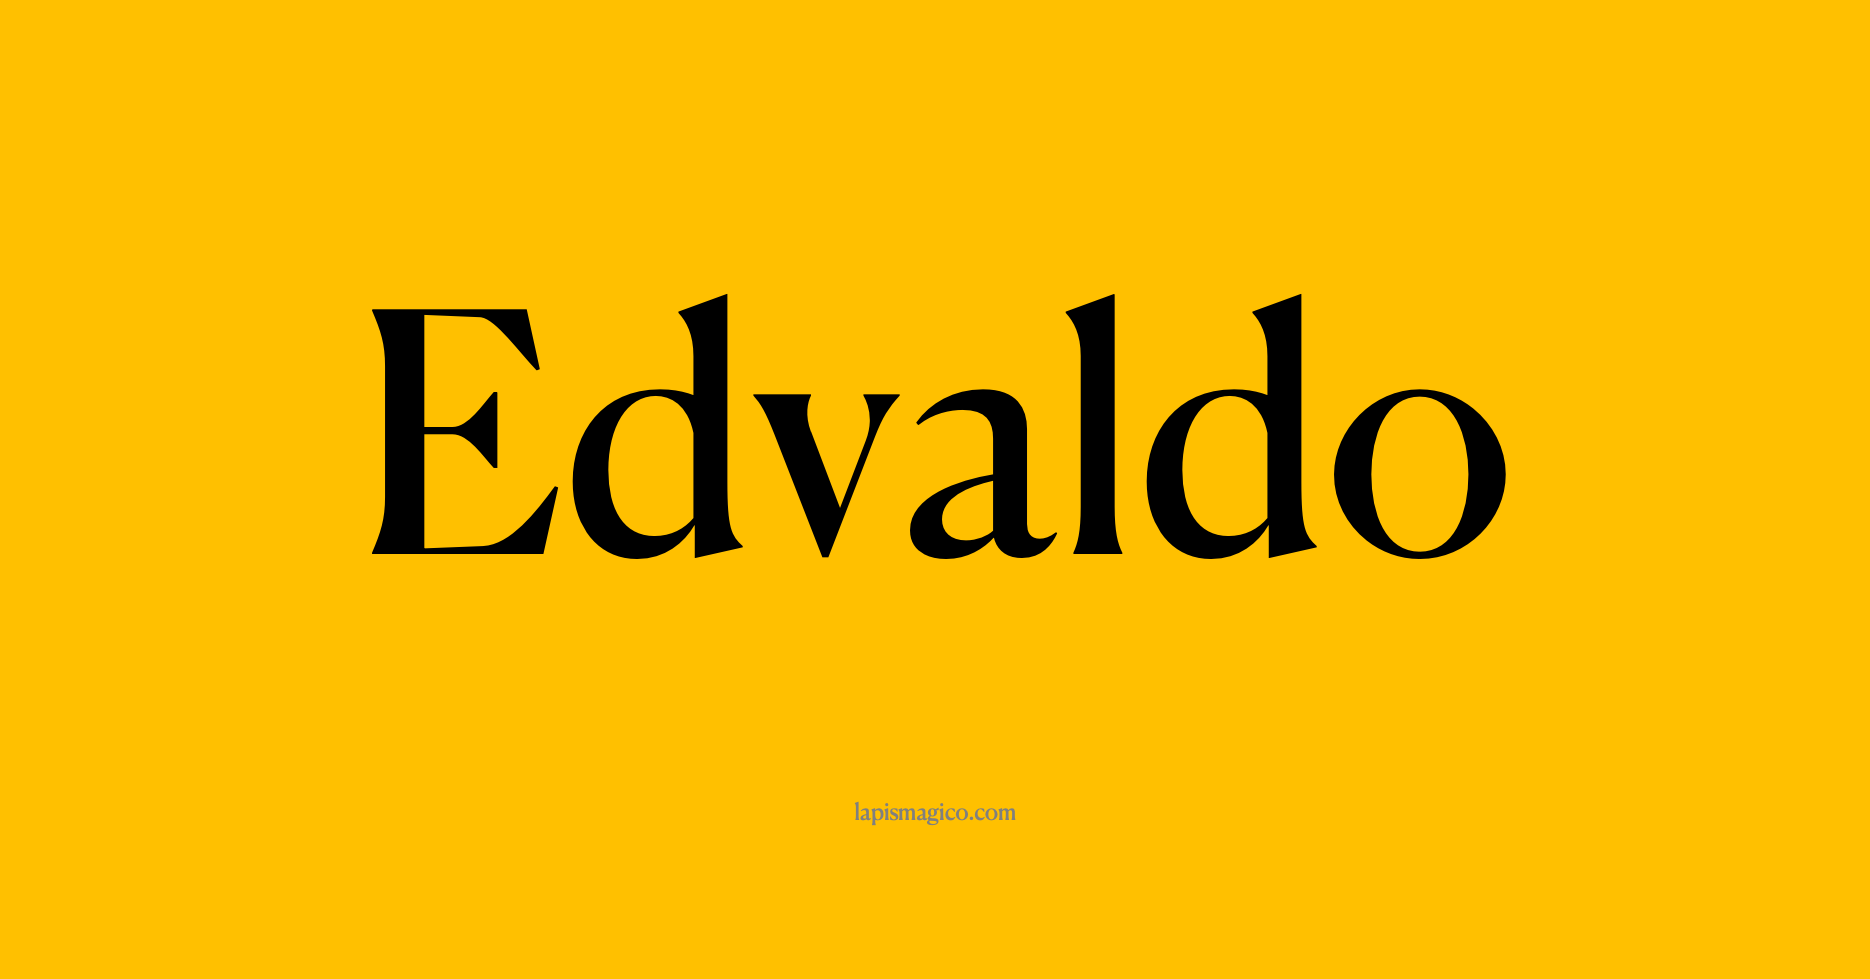 Nome Edvaldo, ficha divertida com pontilhado para crianças